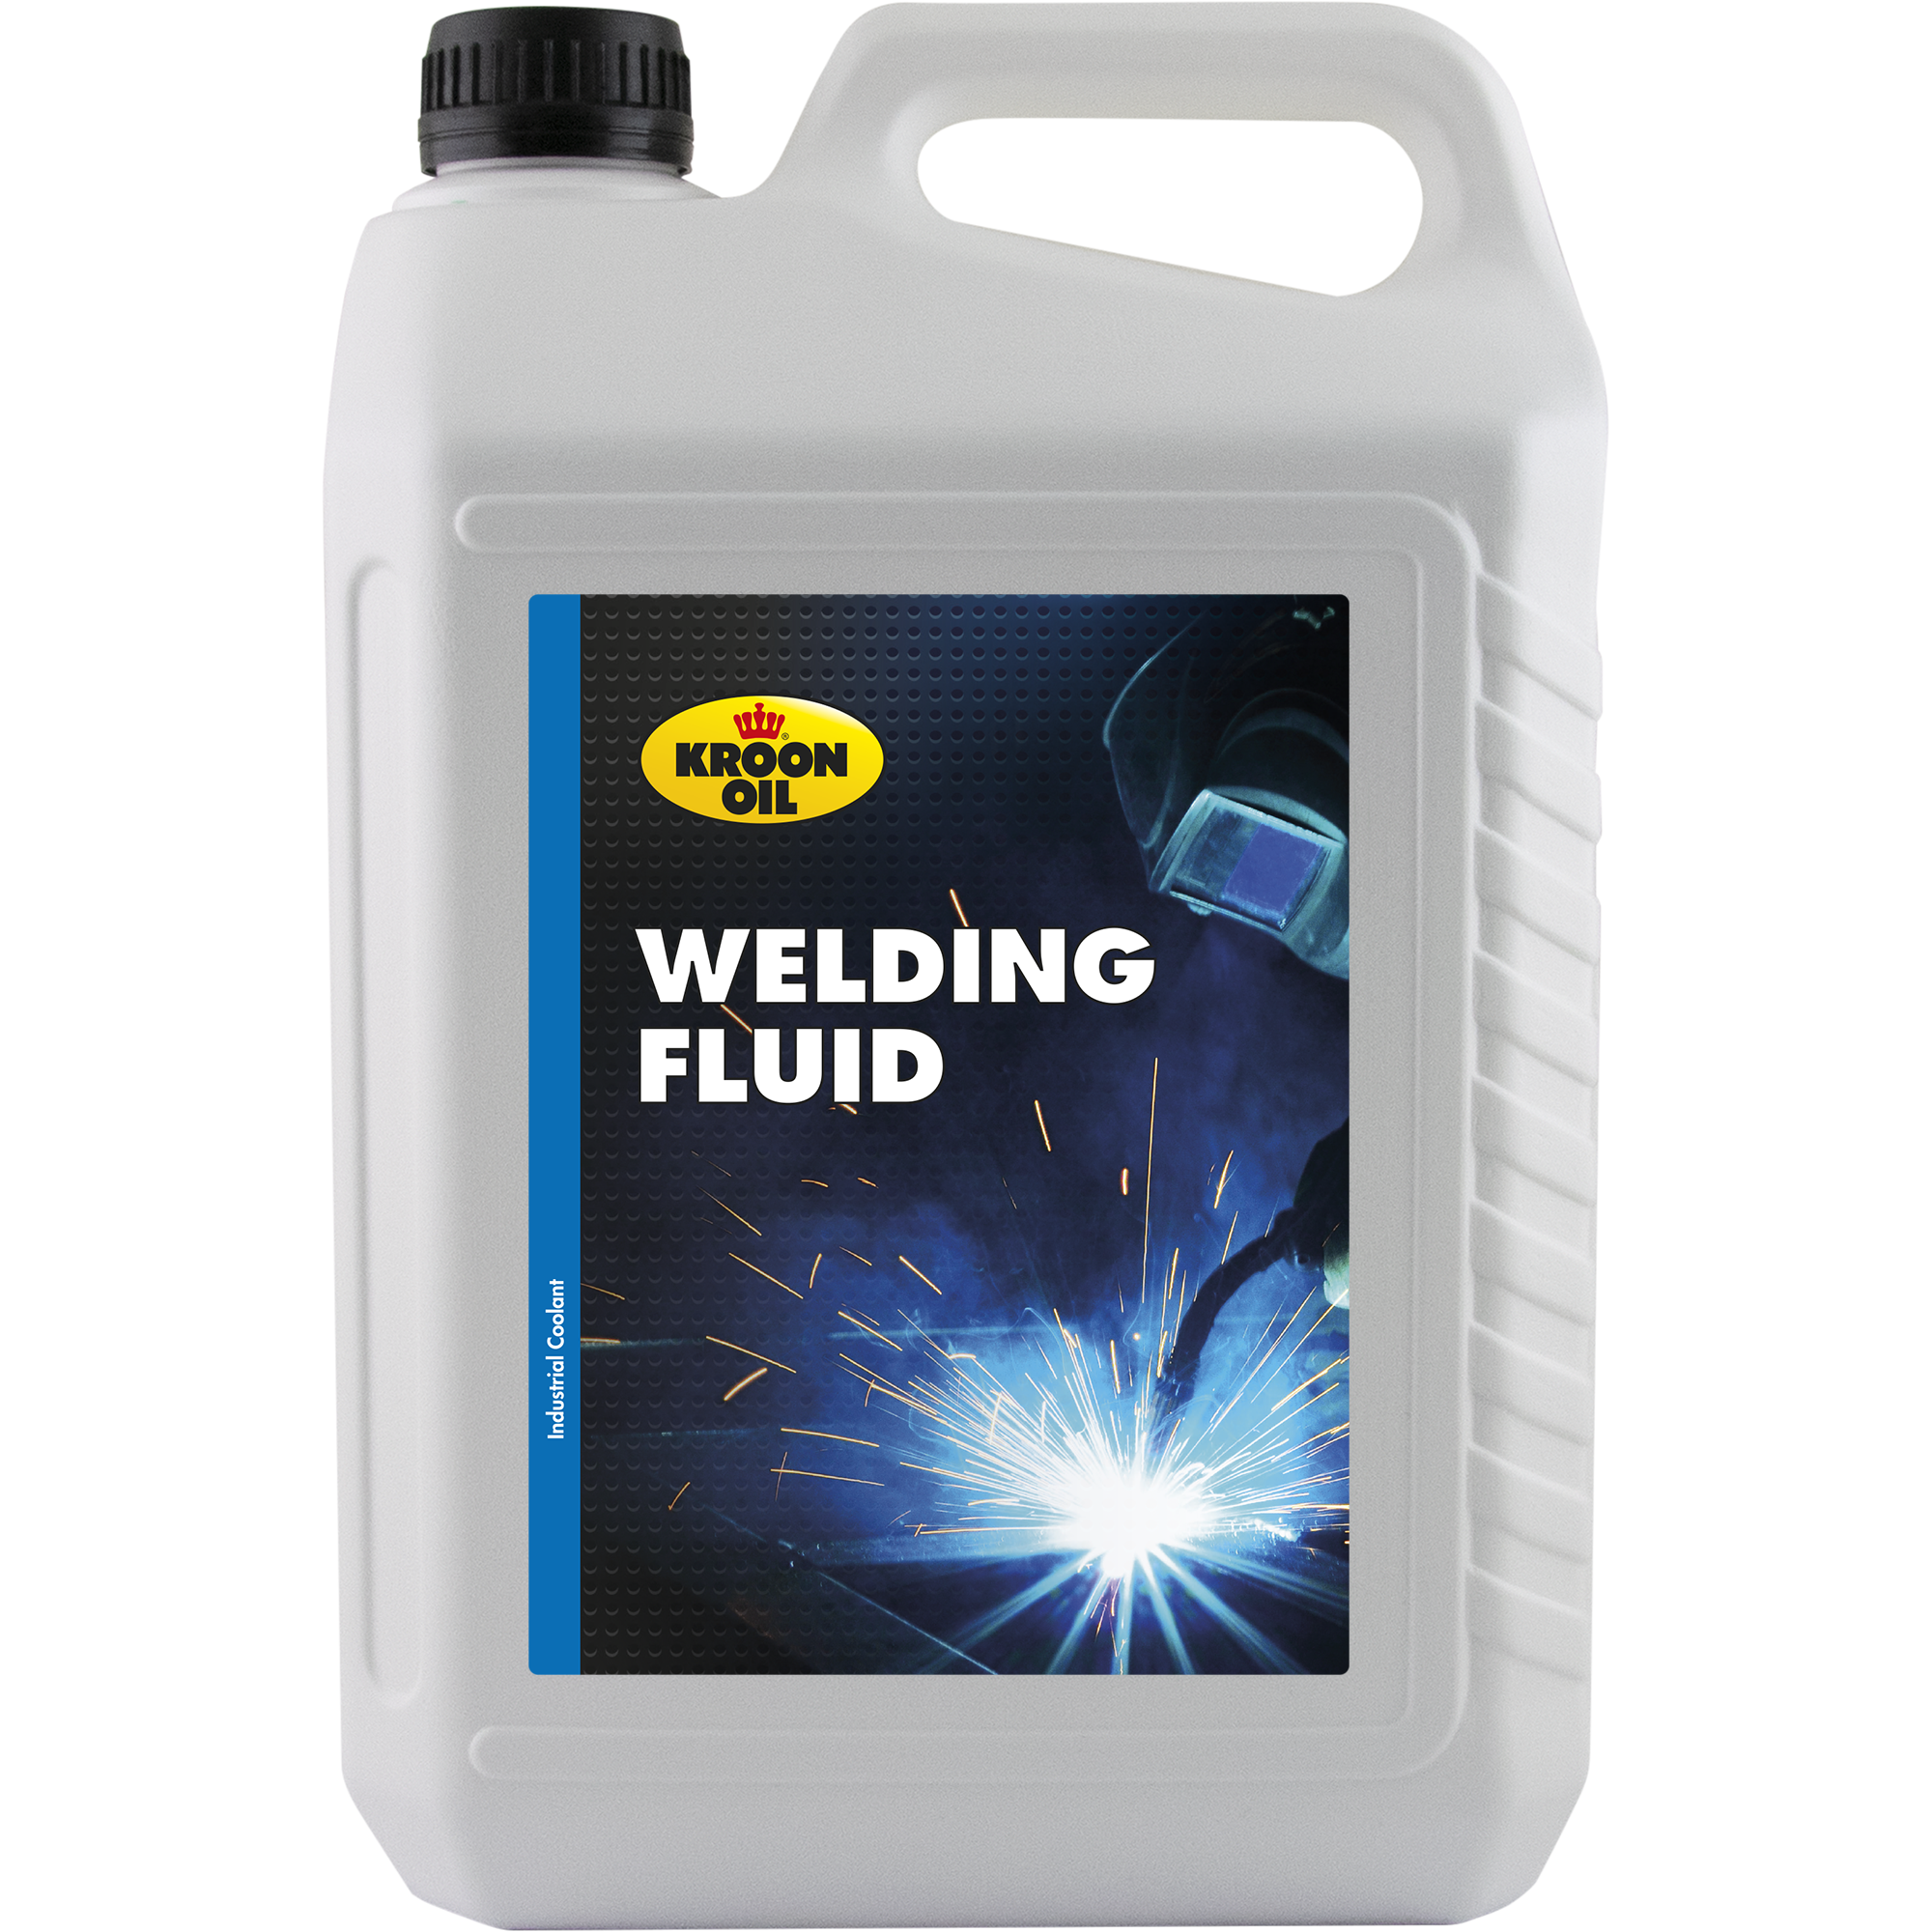 04320-5 Welding Fluid is een speciale koelvloeistof voor lasapparatuur voorzien van vloeistofkoeling.